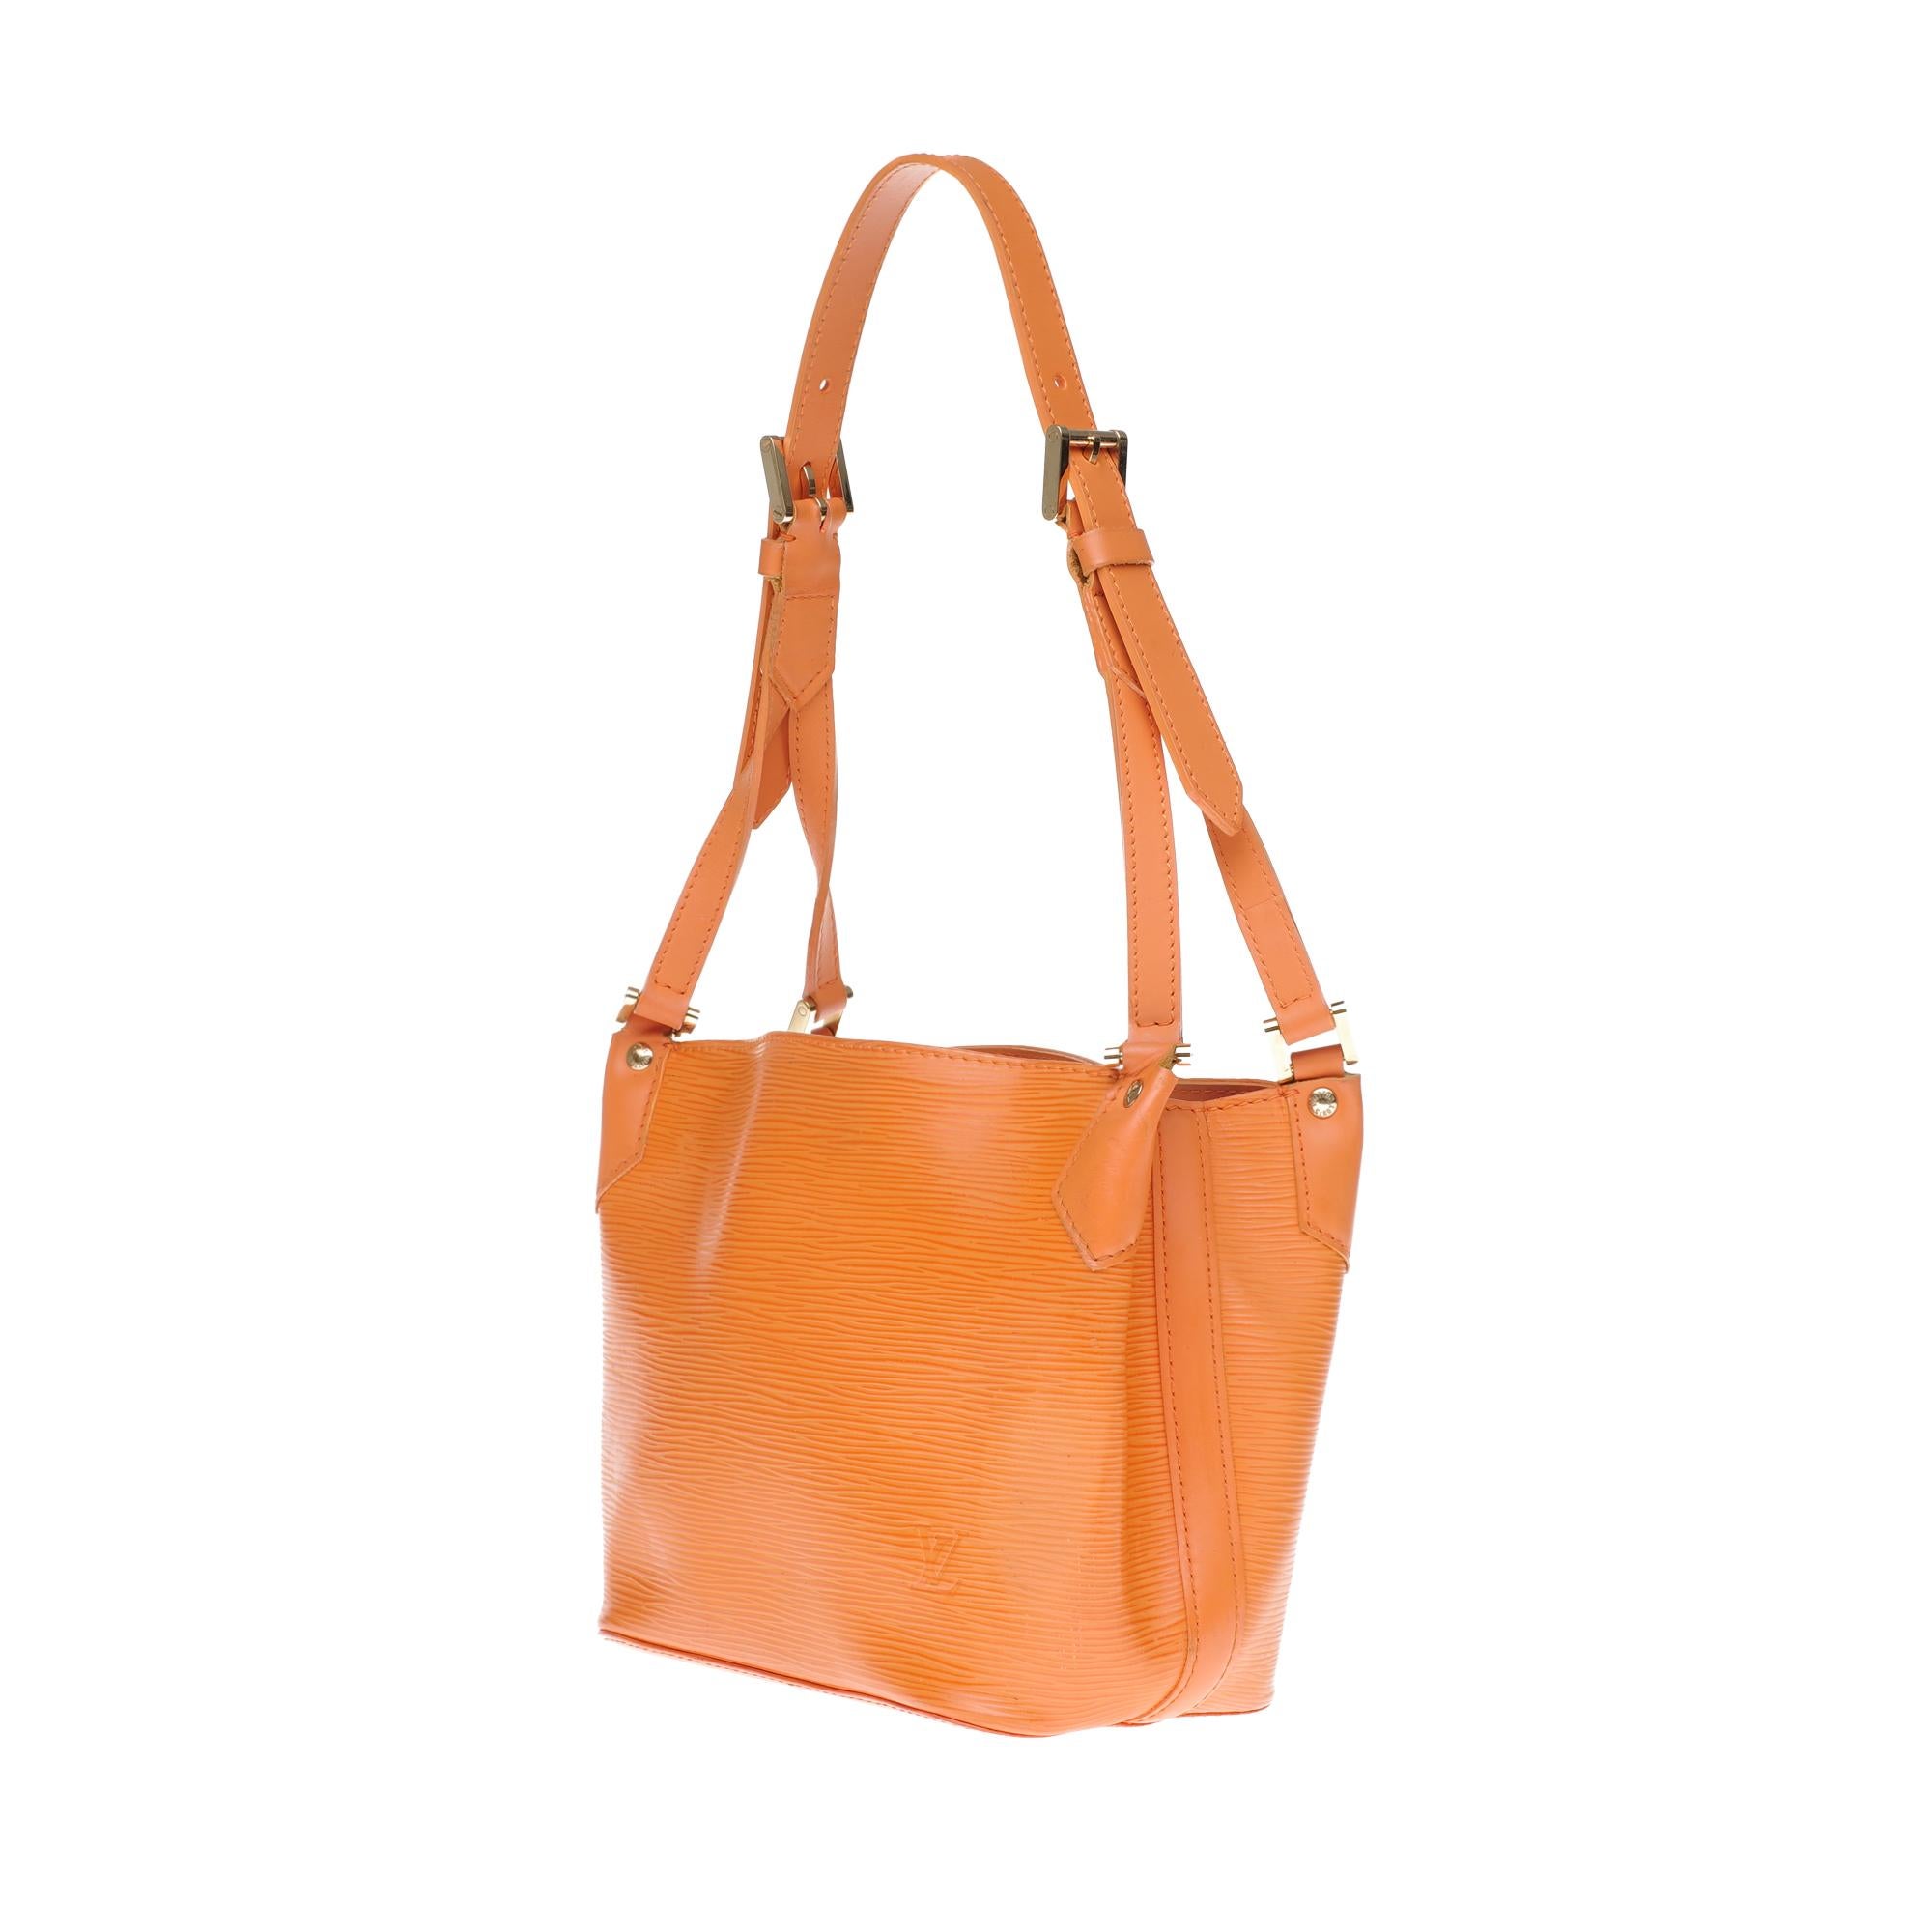 Orange Louis Vuitton Mandara PM hand bag in orange epi leather with gold hardware